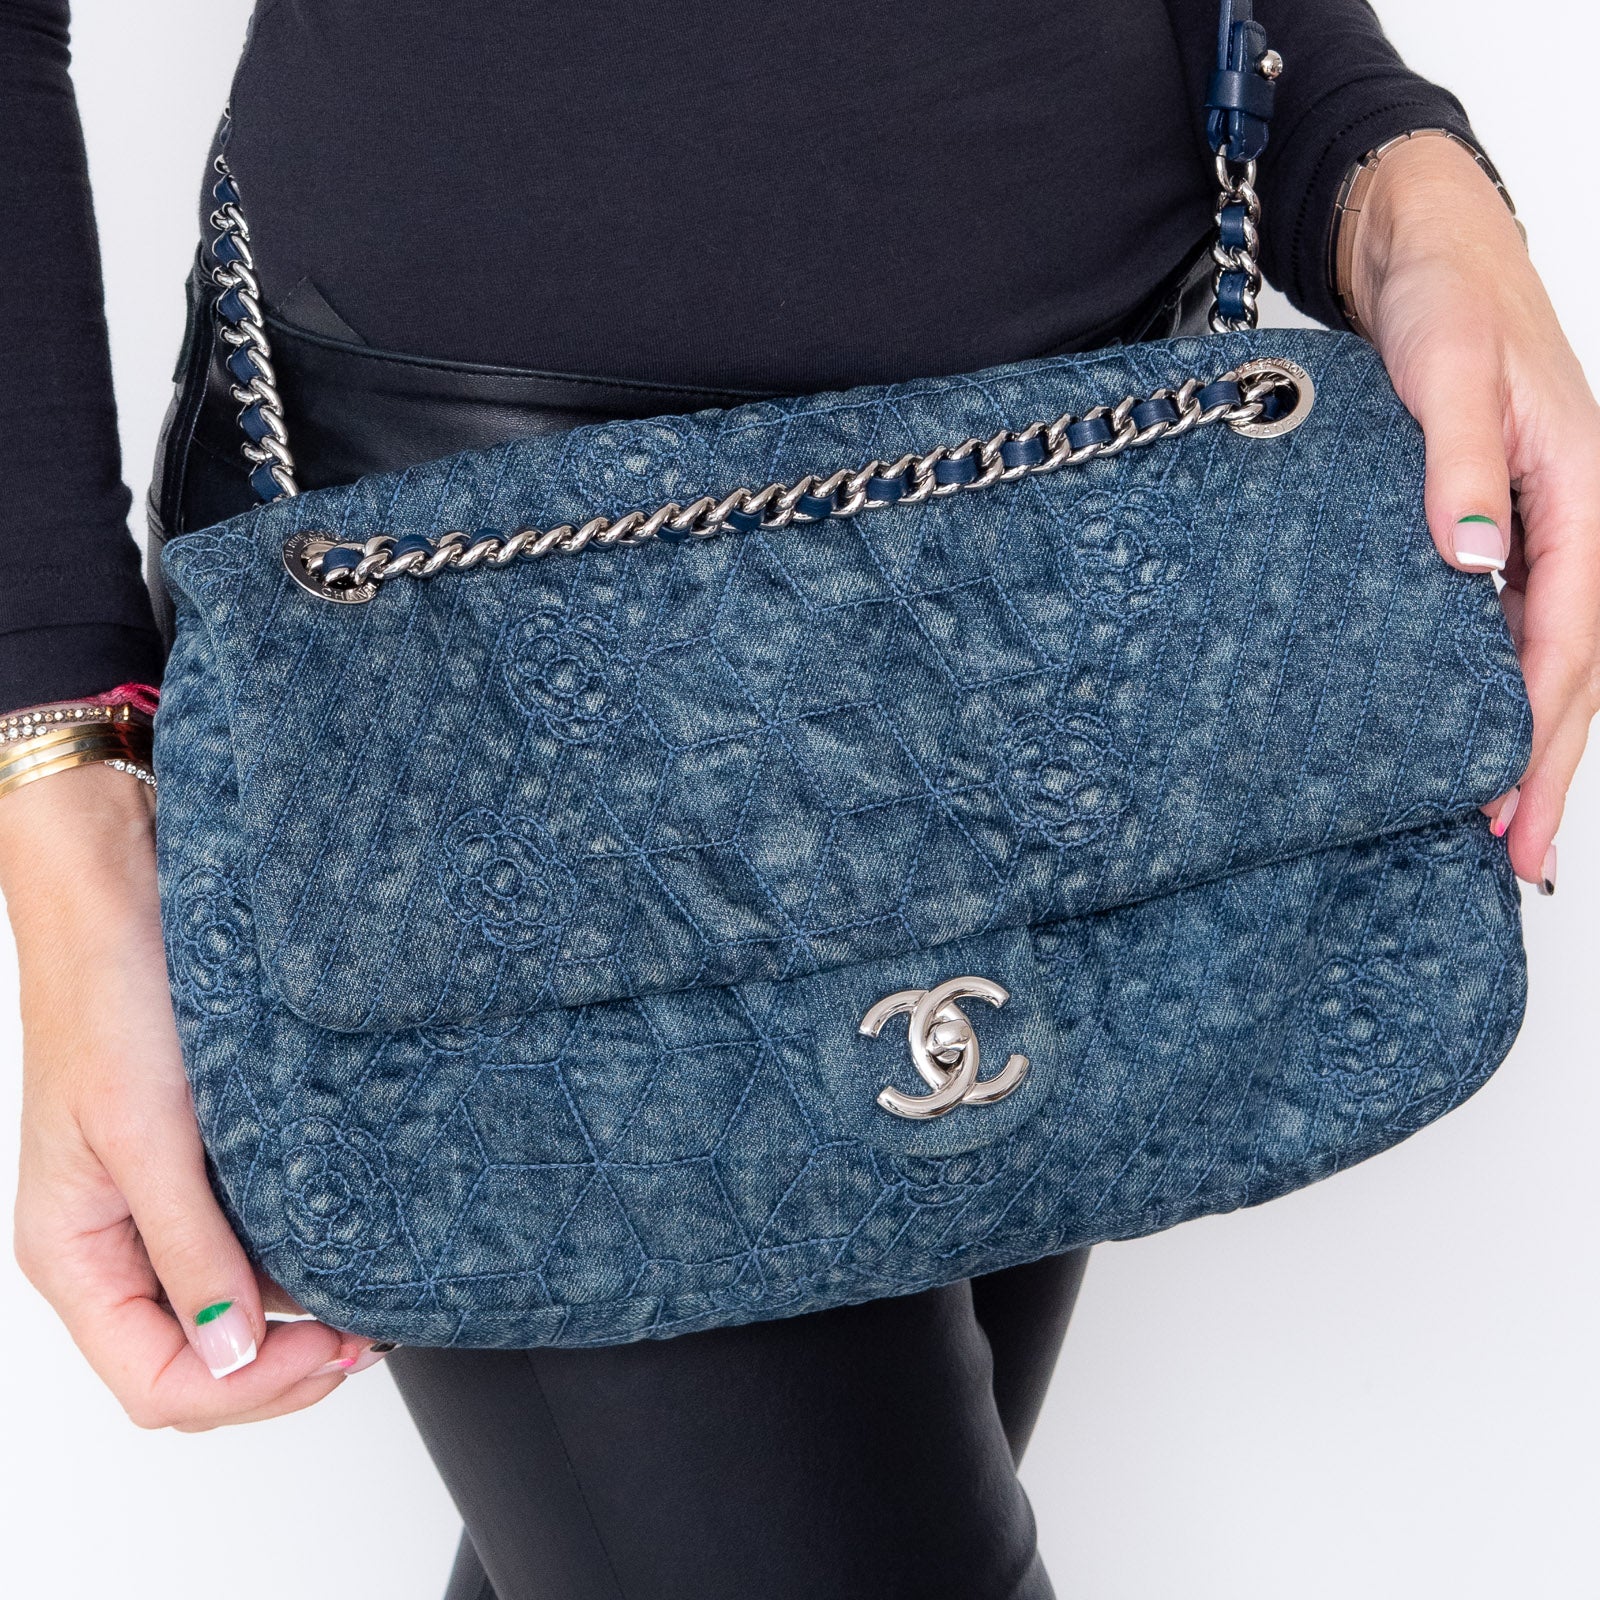 Chanel Denim Blue Camelia Flap Bag - Image 7 of 11